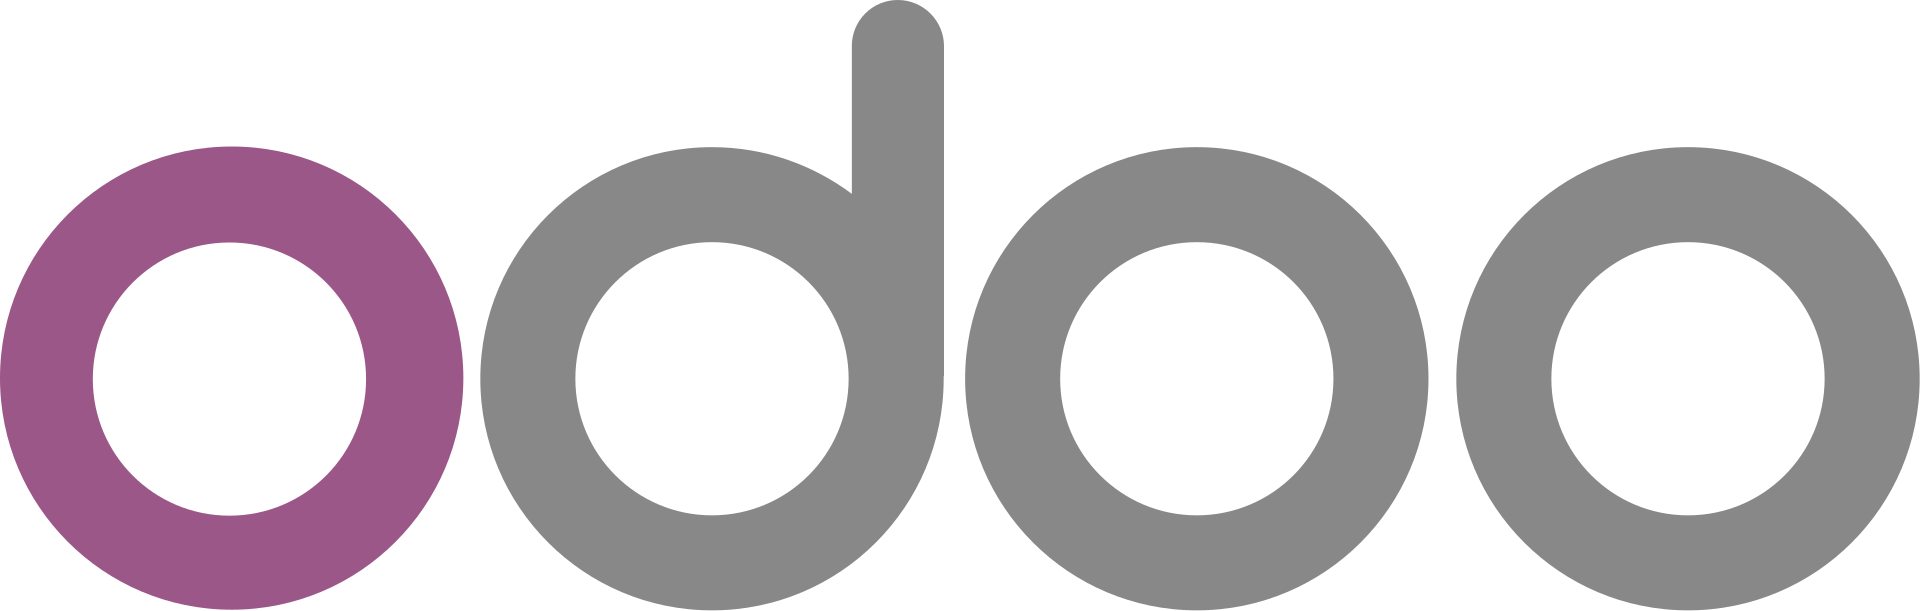 1920px Odoo logo svg ETISA